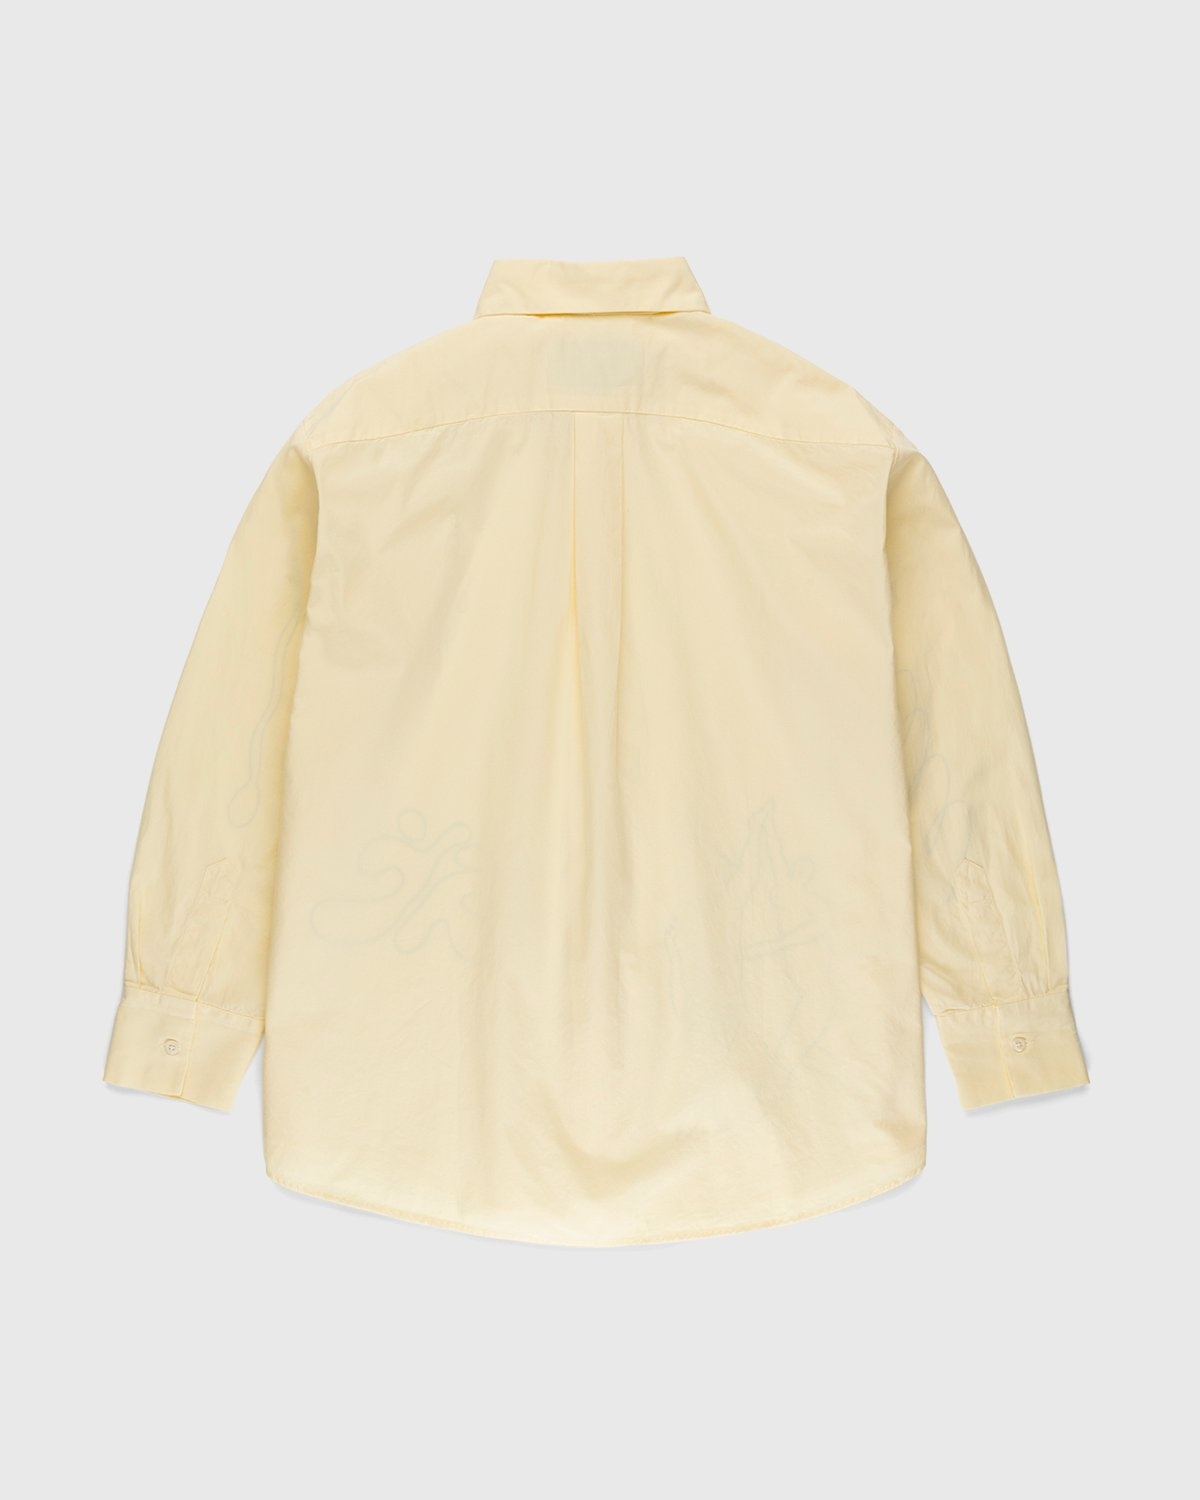 Carne Bollente – Dancing Keen Shirt Butter Yellow - Longsleeve Shirts - Beige - Image 2